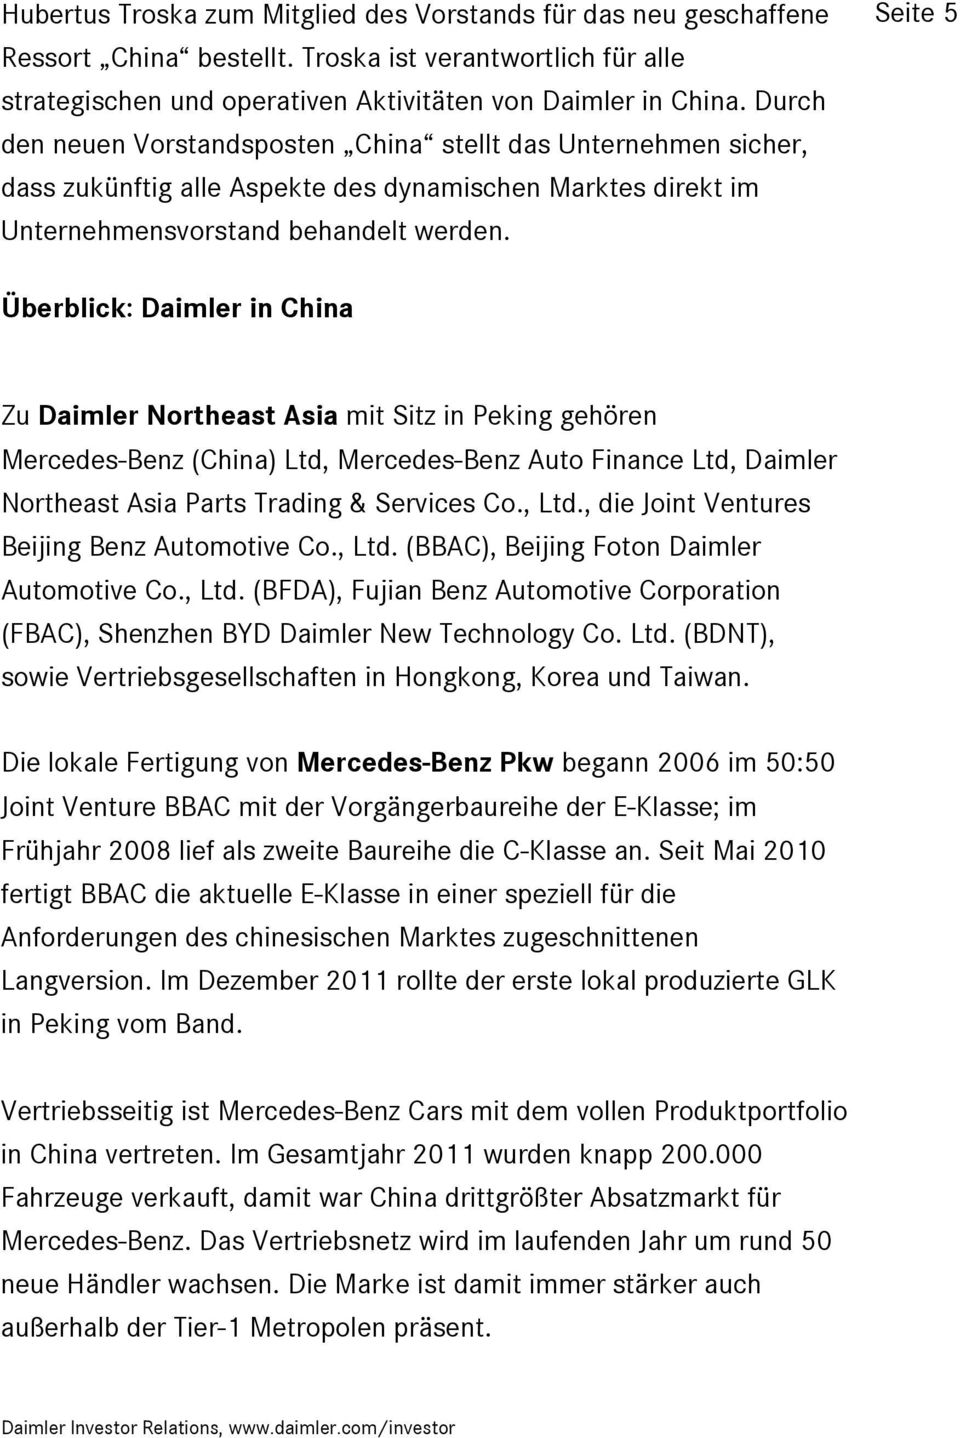 Seite 5 Überblick: Daimler in China Zu Daimler Northeast Asia mit Sitz in Peking gehören Mercedes-Benz (China) Ltd, Mercedes-Benz Auto Finance Ltd, Daimler Northeast Asia Parts Trading & Services Co.